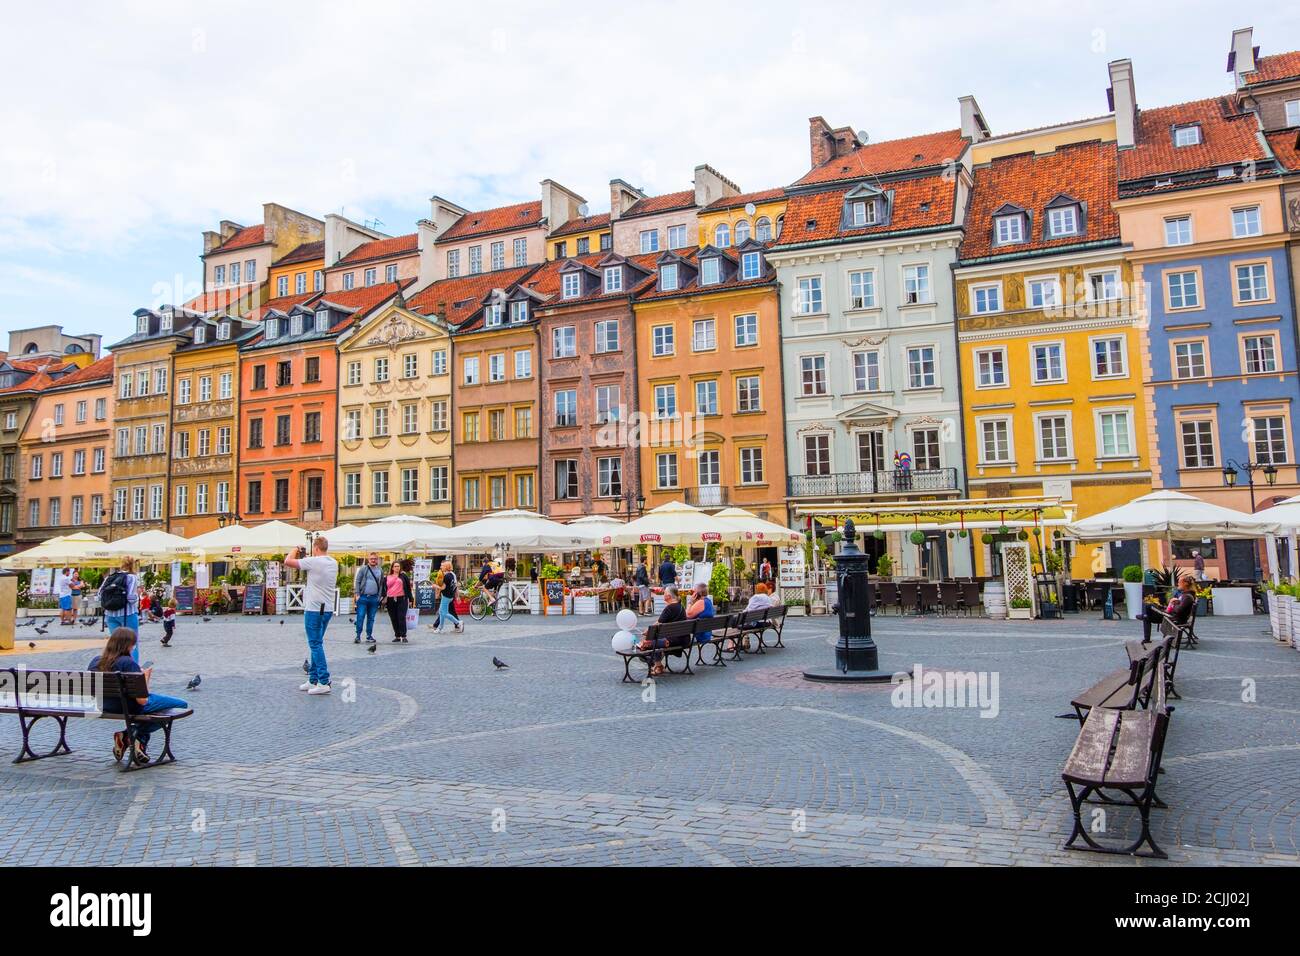 Rynek Starego Miasta, old town square, Warsaw, Poland Stock Photo